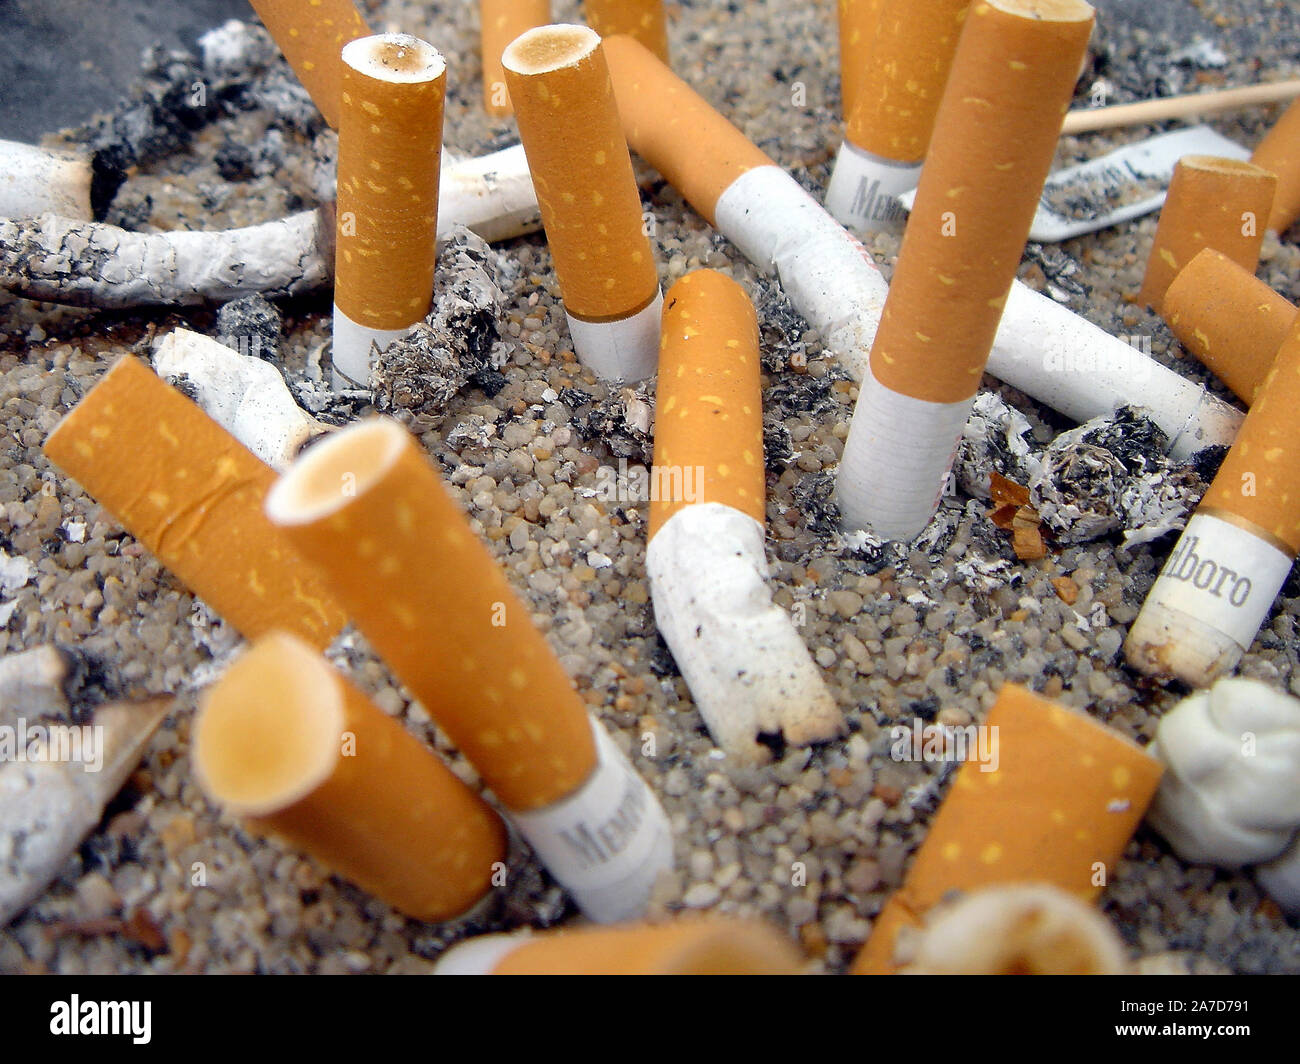 Zigarettenstummel, Aschenbecher, Zigaretten, Raucher, Asche, Stock Photo